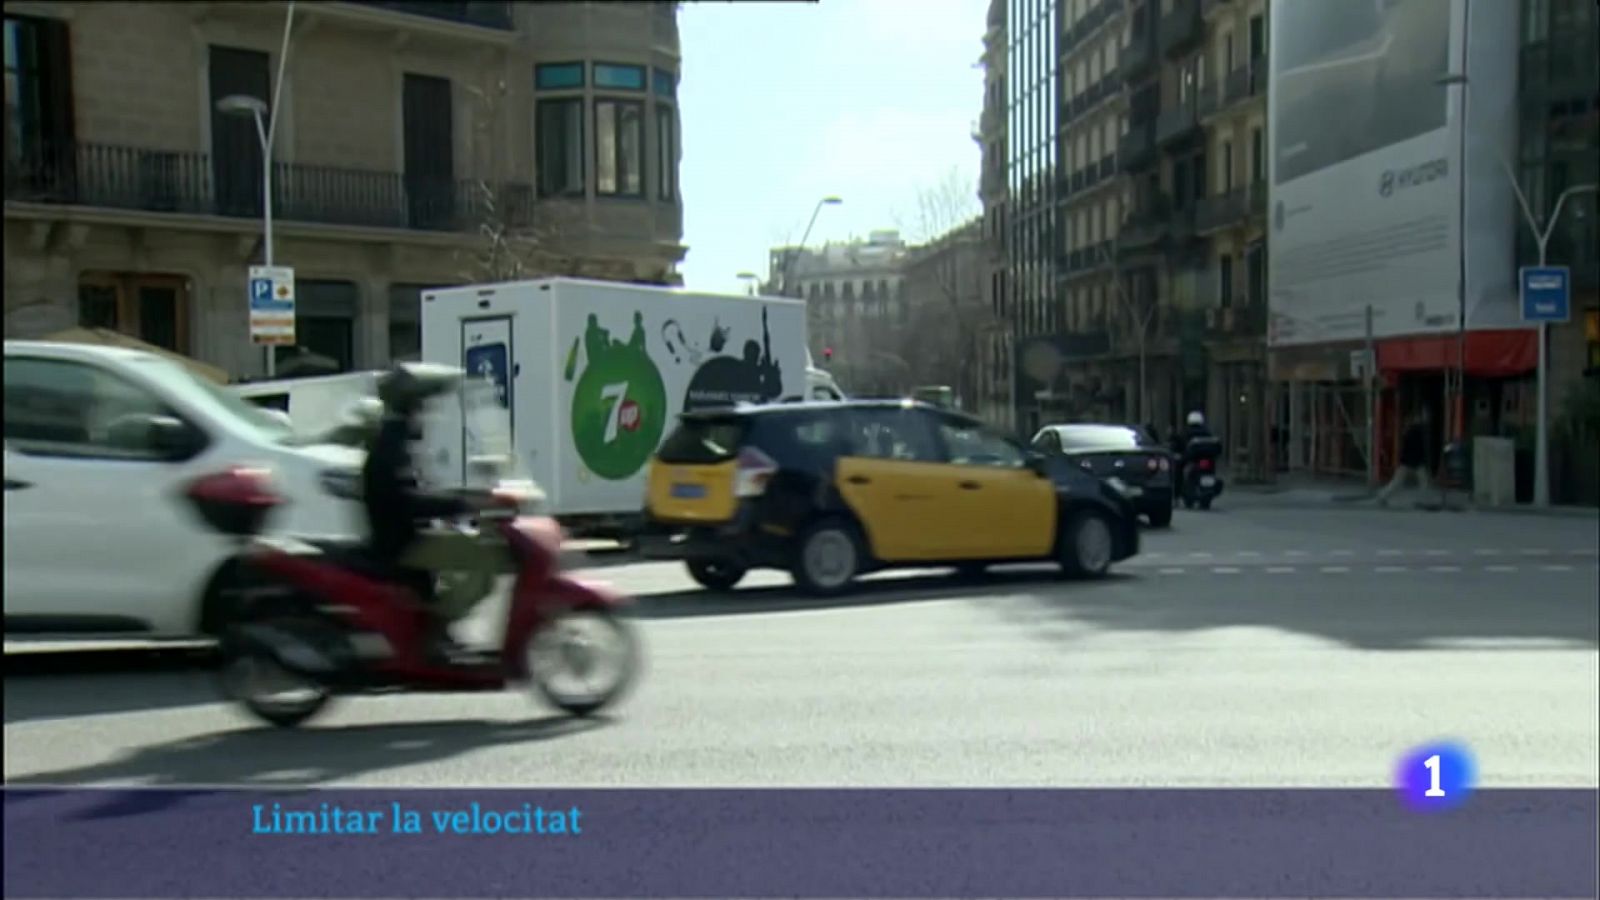 L'ajuntament de Barcelona vol limitar a 30 km/h la velocitat màxima a 3 de cada 4 carrers de la ciutat